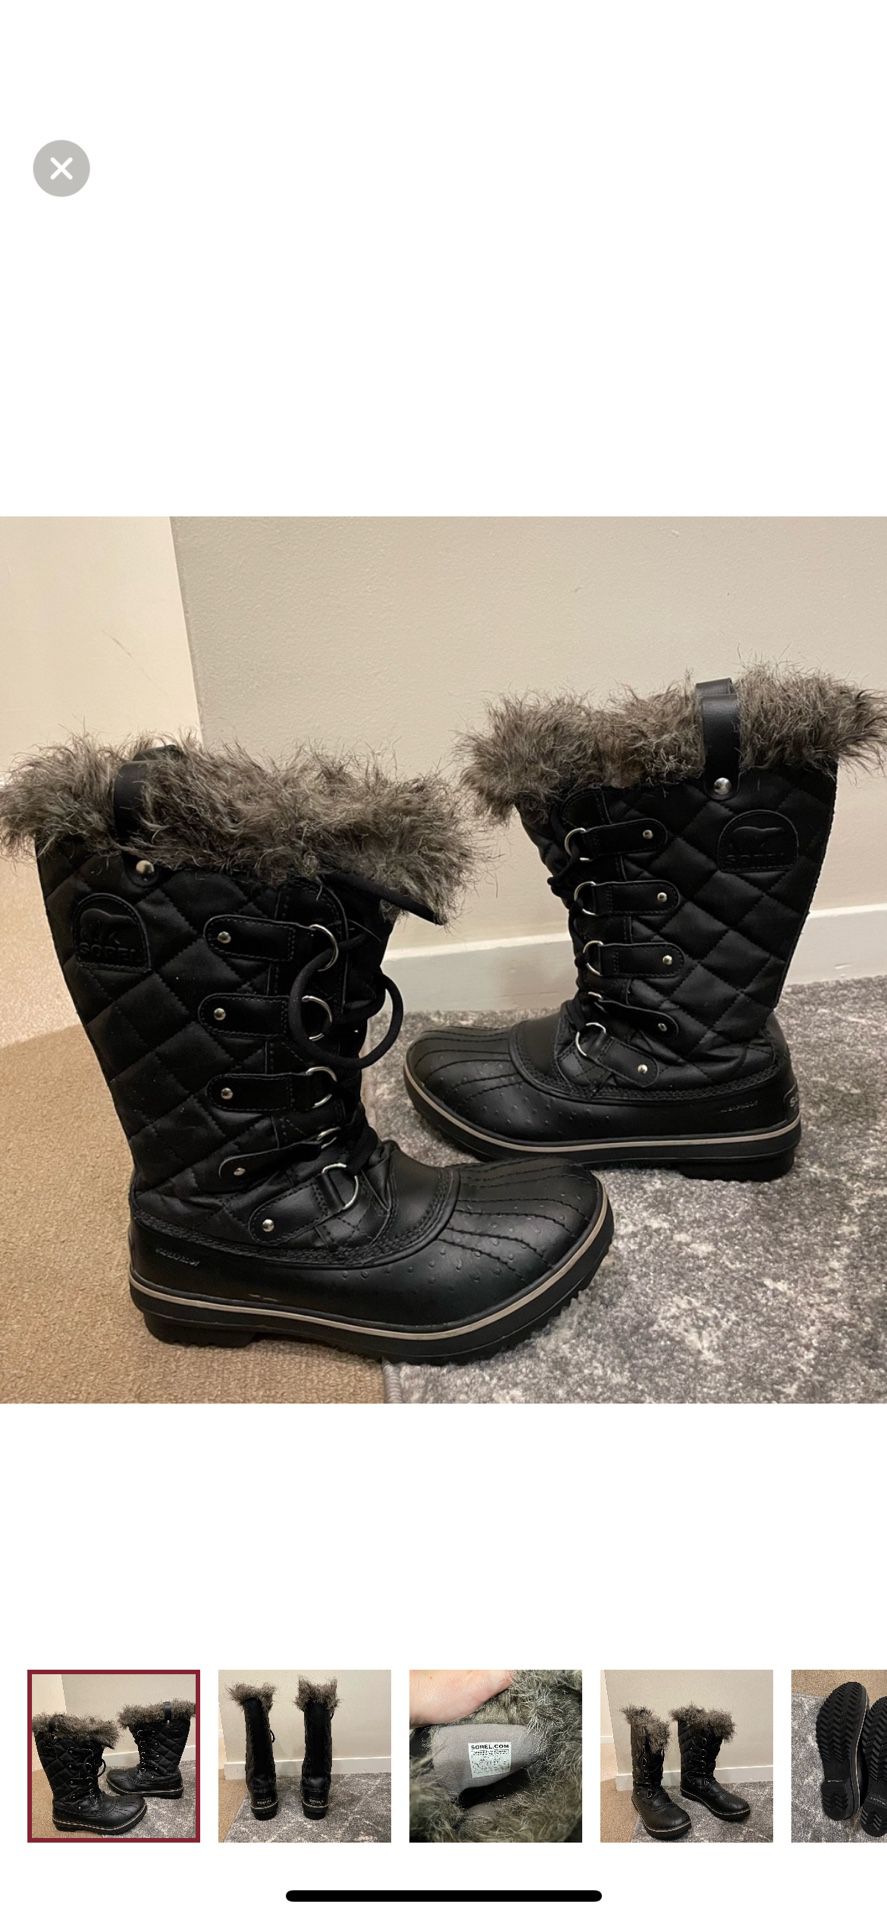 Sorel Waterproof Snow Boots